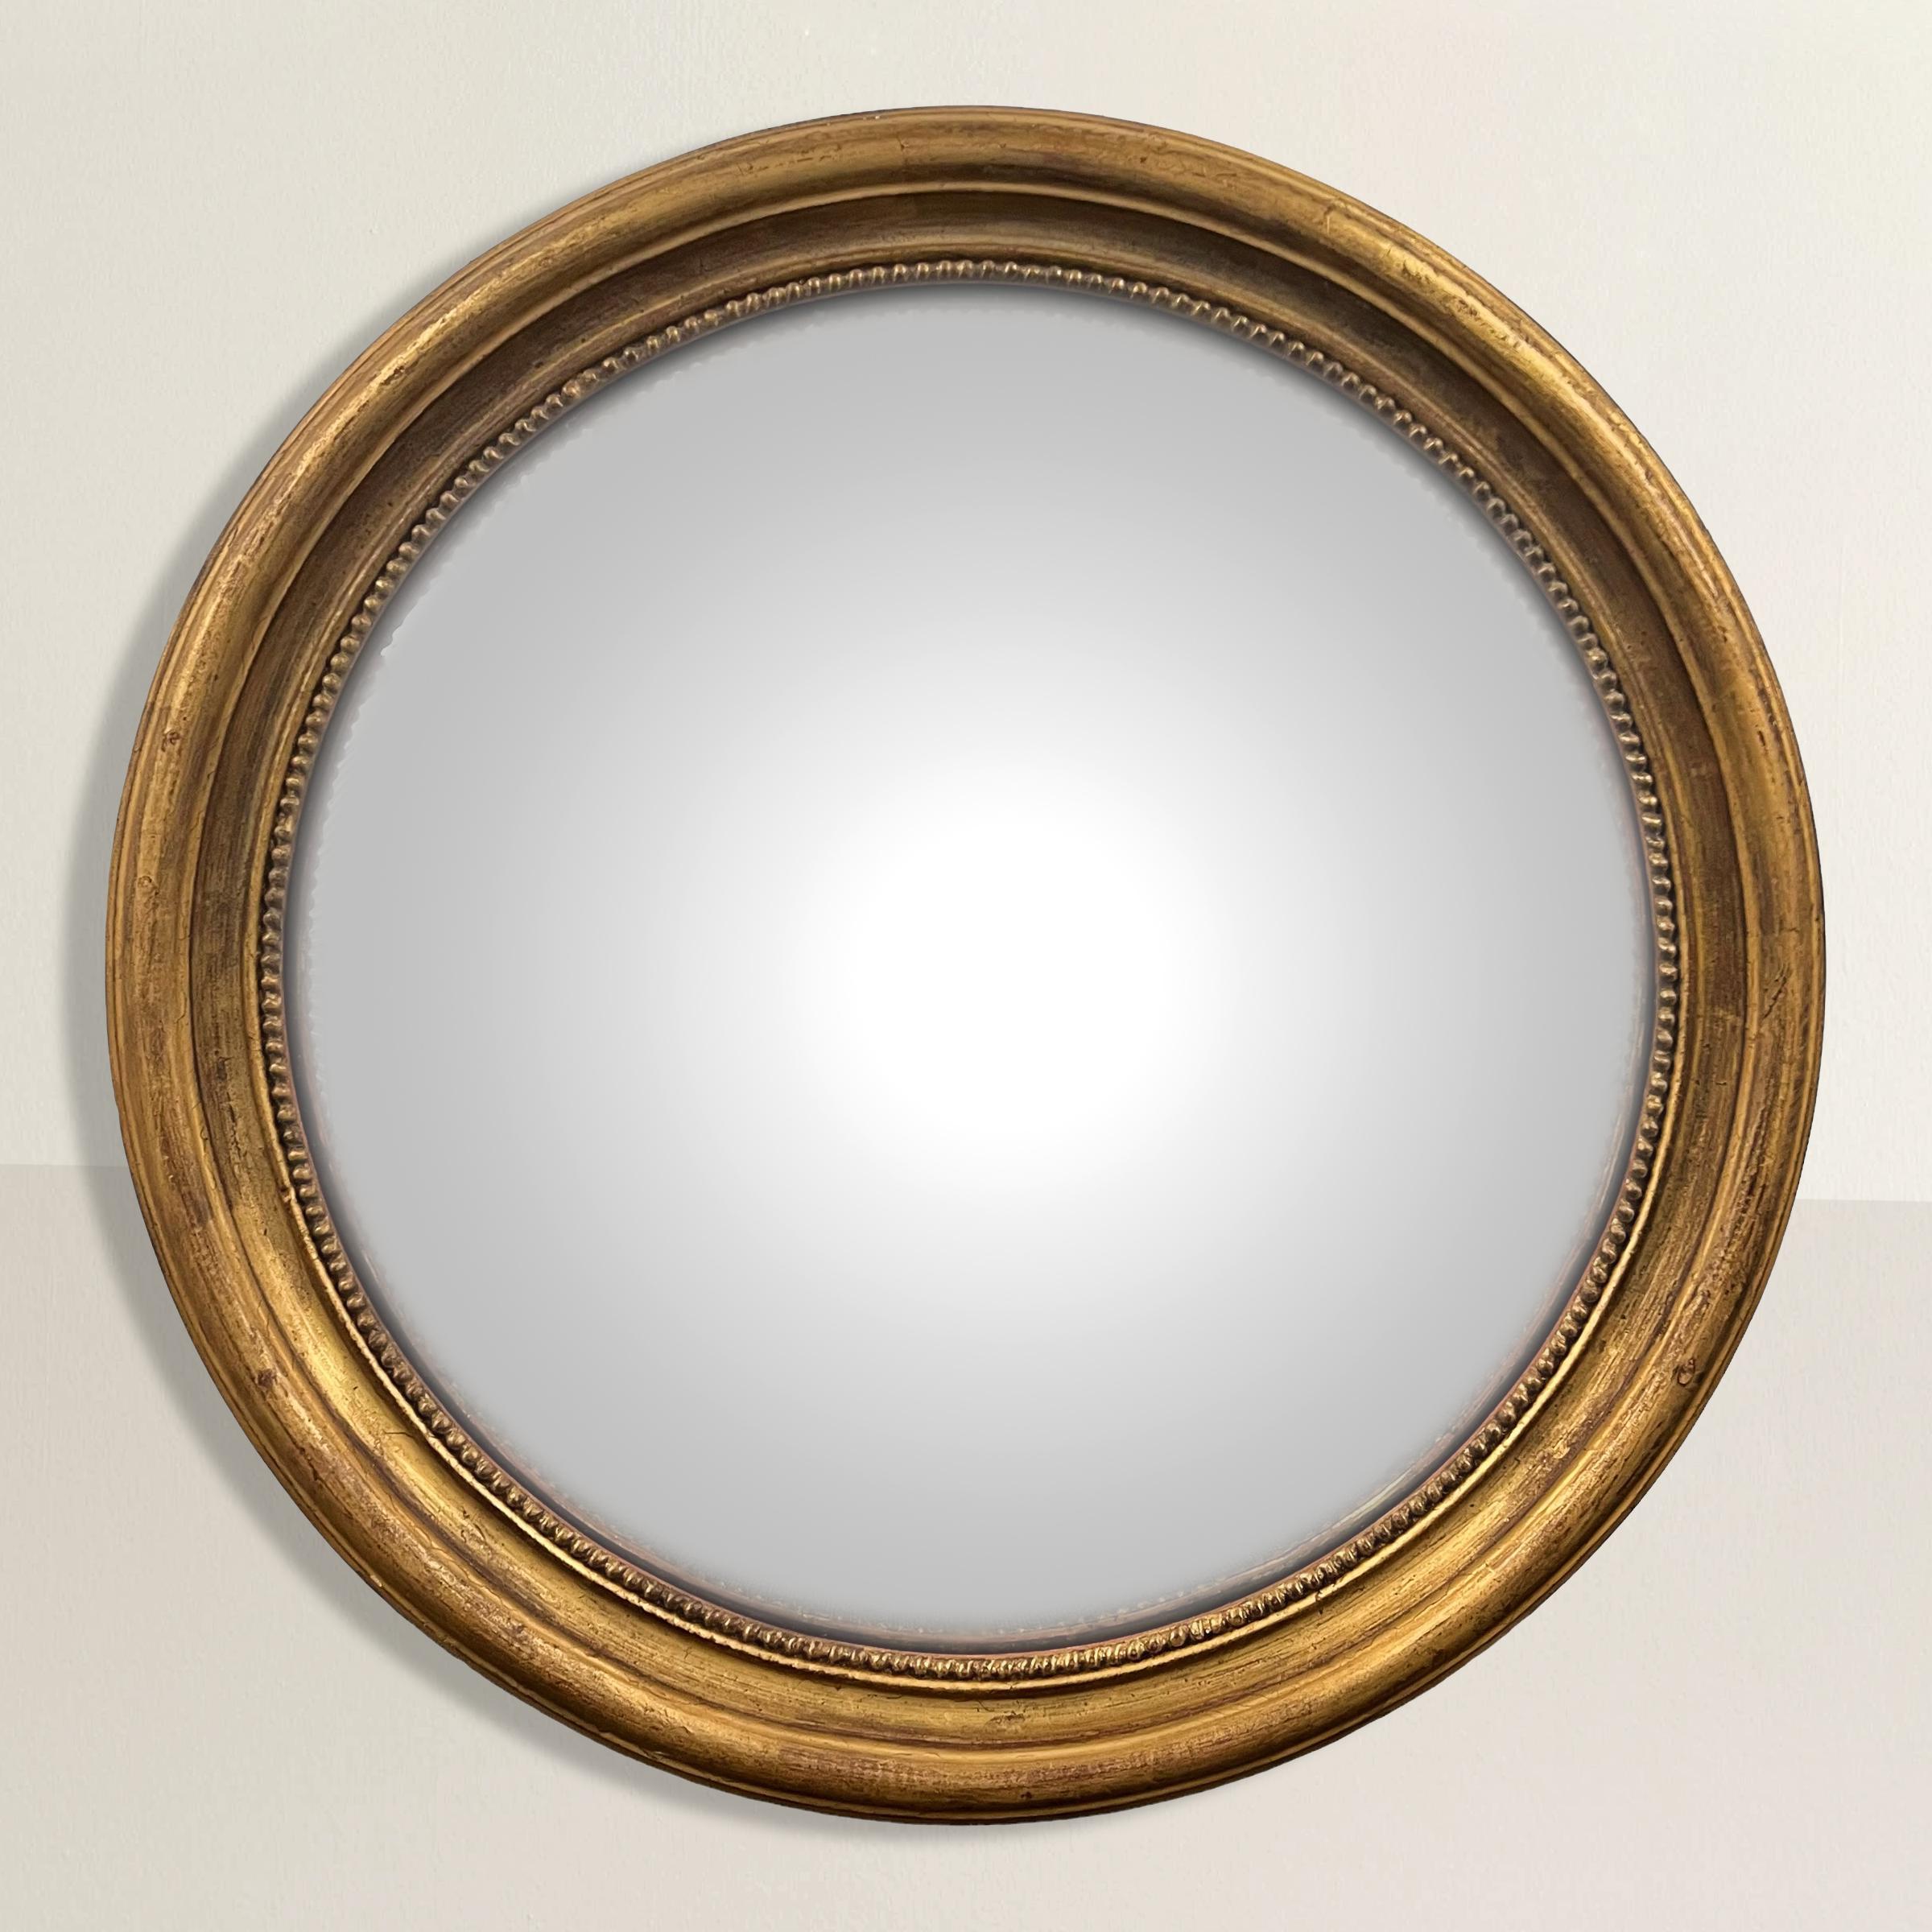 Lassen Sie sich von der Opulenz des neoklassischen Designs inspirieren, mit diesem atemberaubenden großen runden, konvexen Spiegel mit vergoldetem Holzrahmen aus dem 20. Sein filigraner Rahmen erinnert an die Erhabenheit des klassischen Designs und